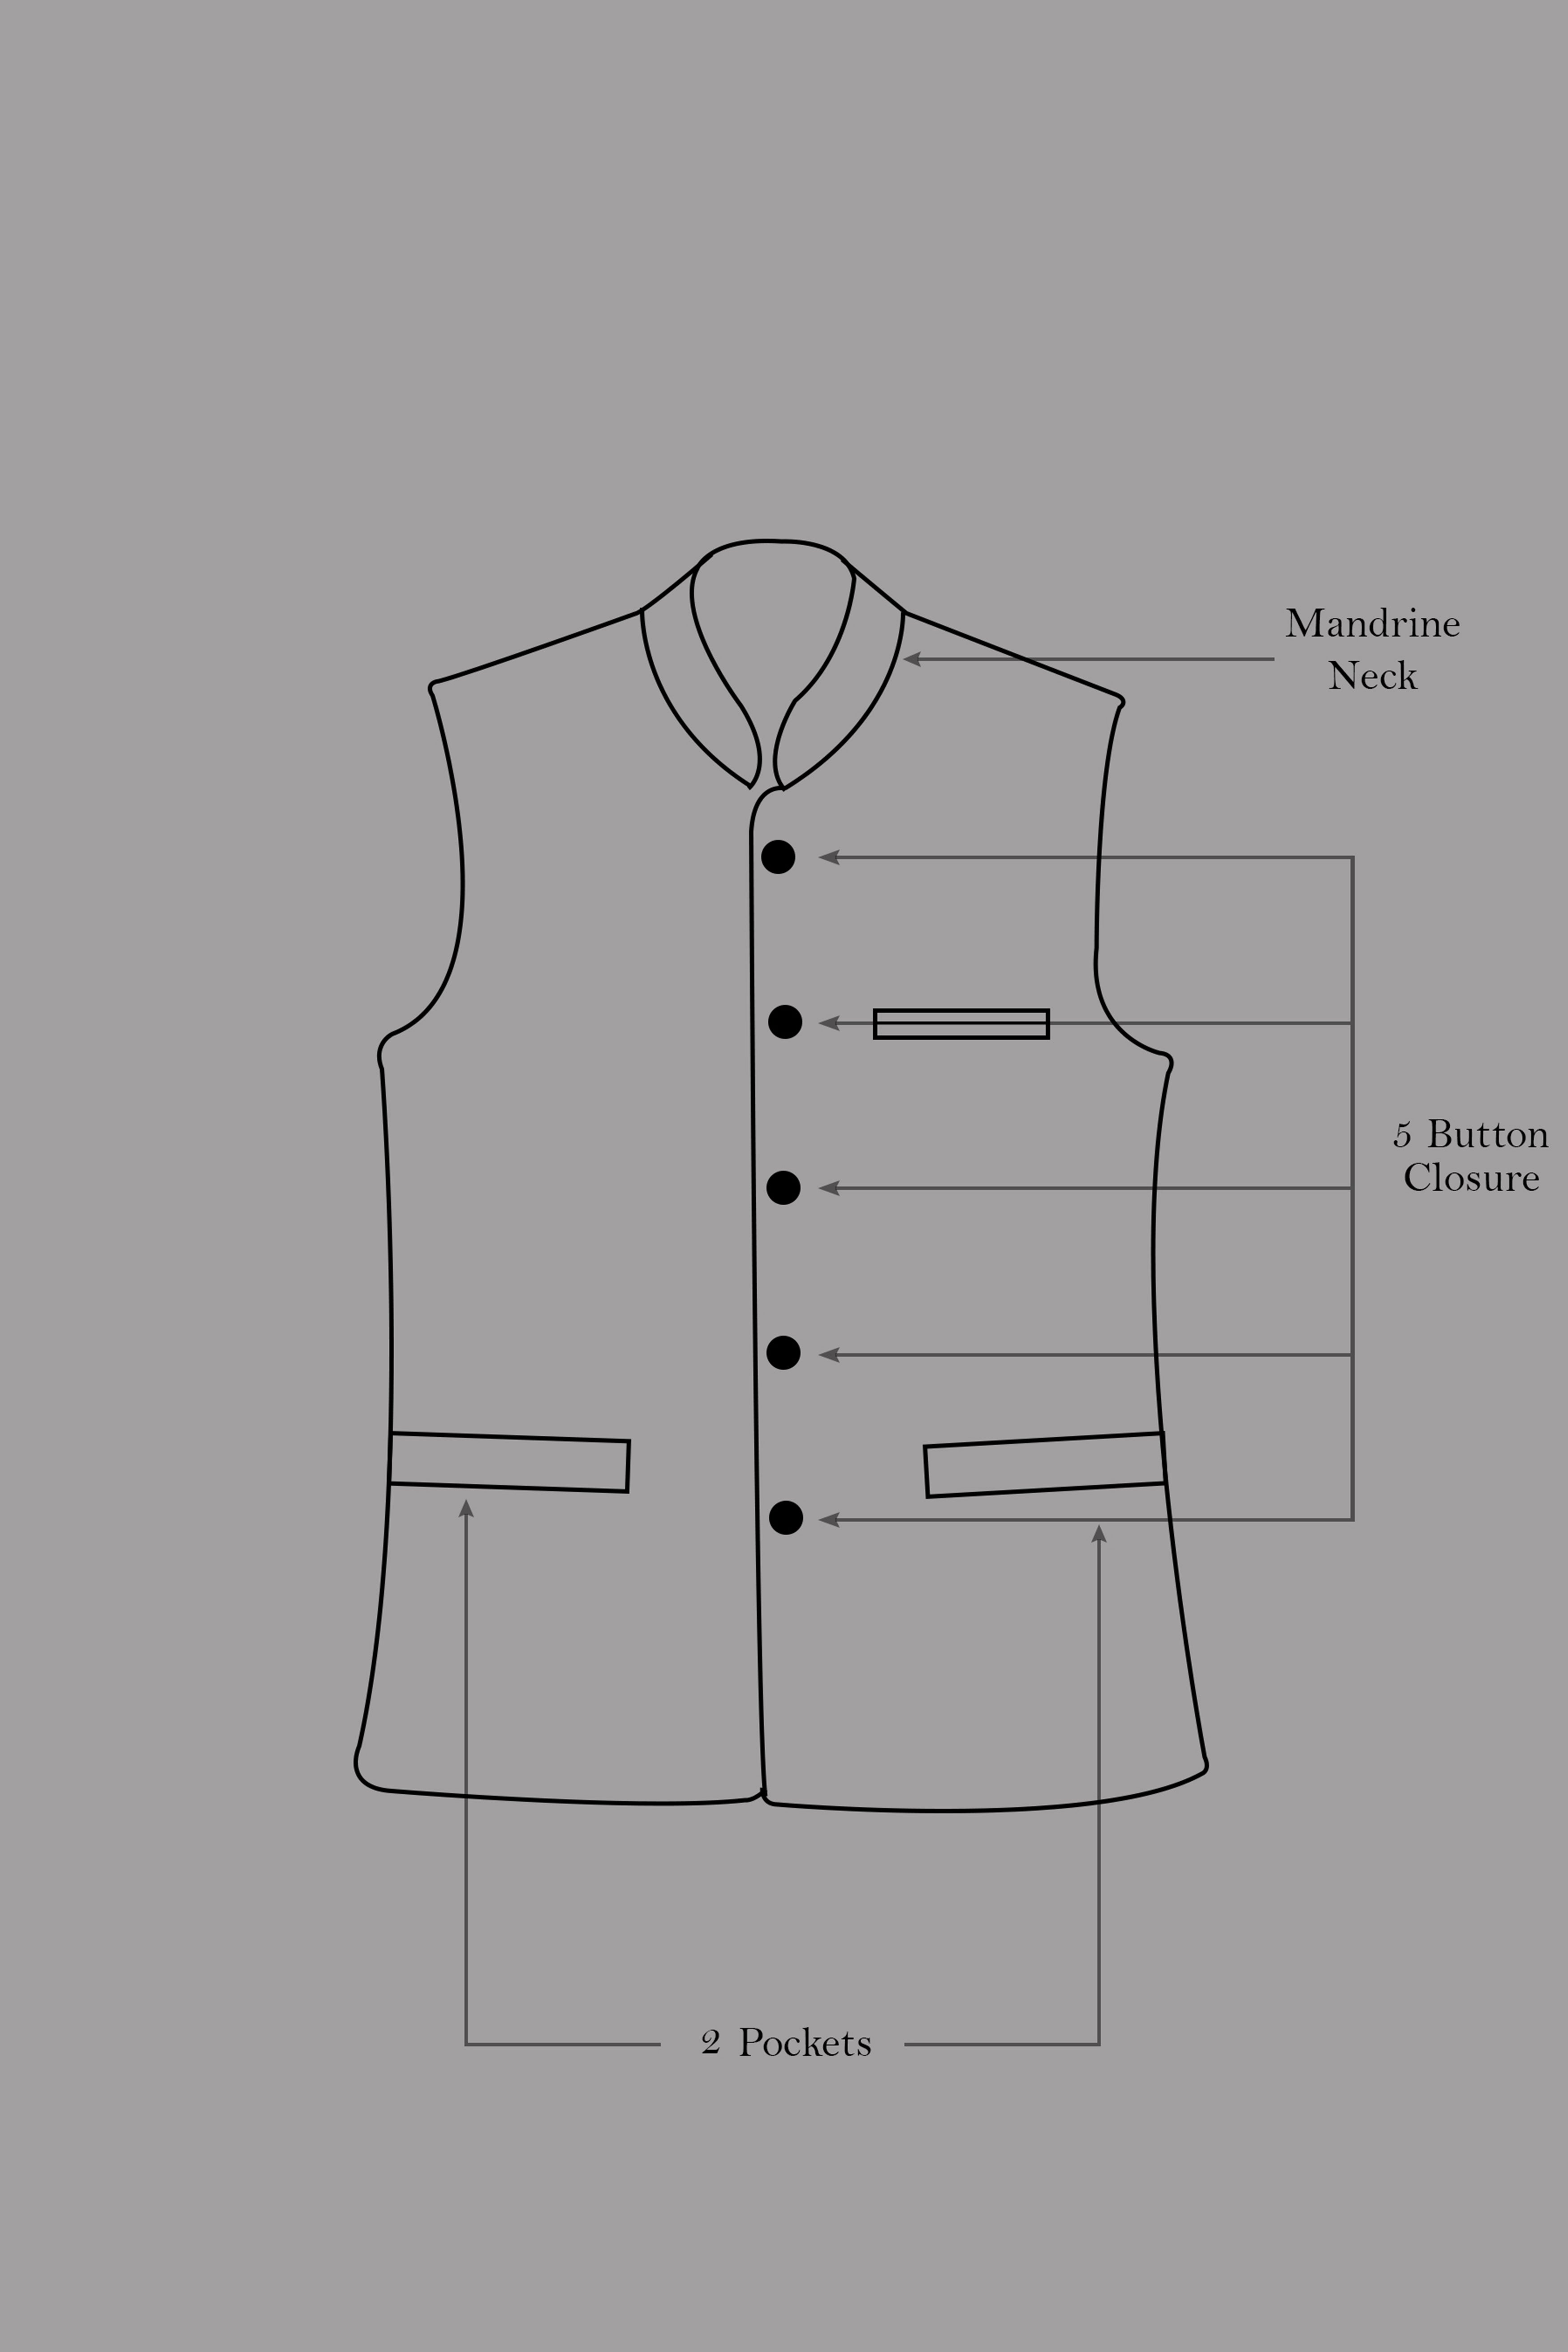 Quicksand Brown Stretchable Premium Cotton Traveler Nehru Jacket